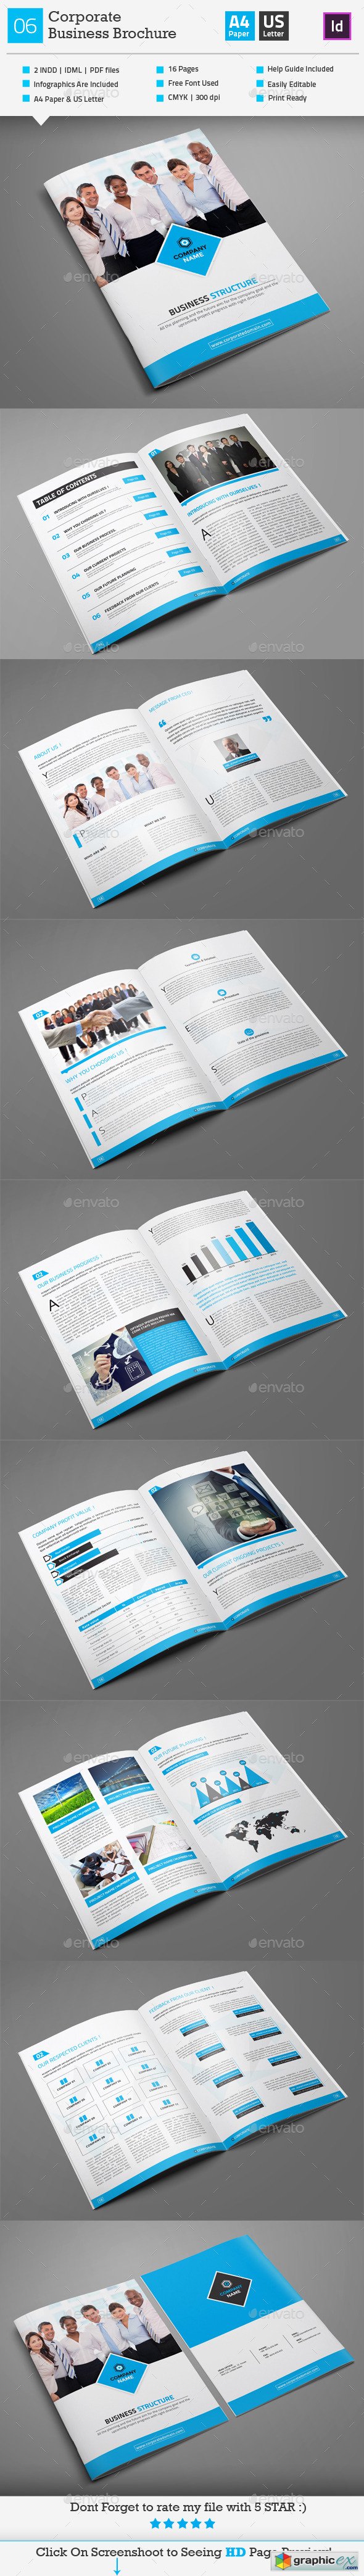 Corporate Business Brochure 06